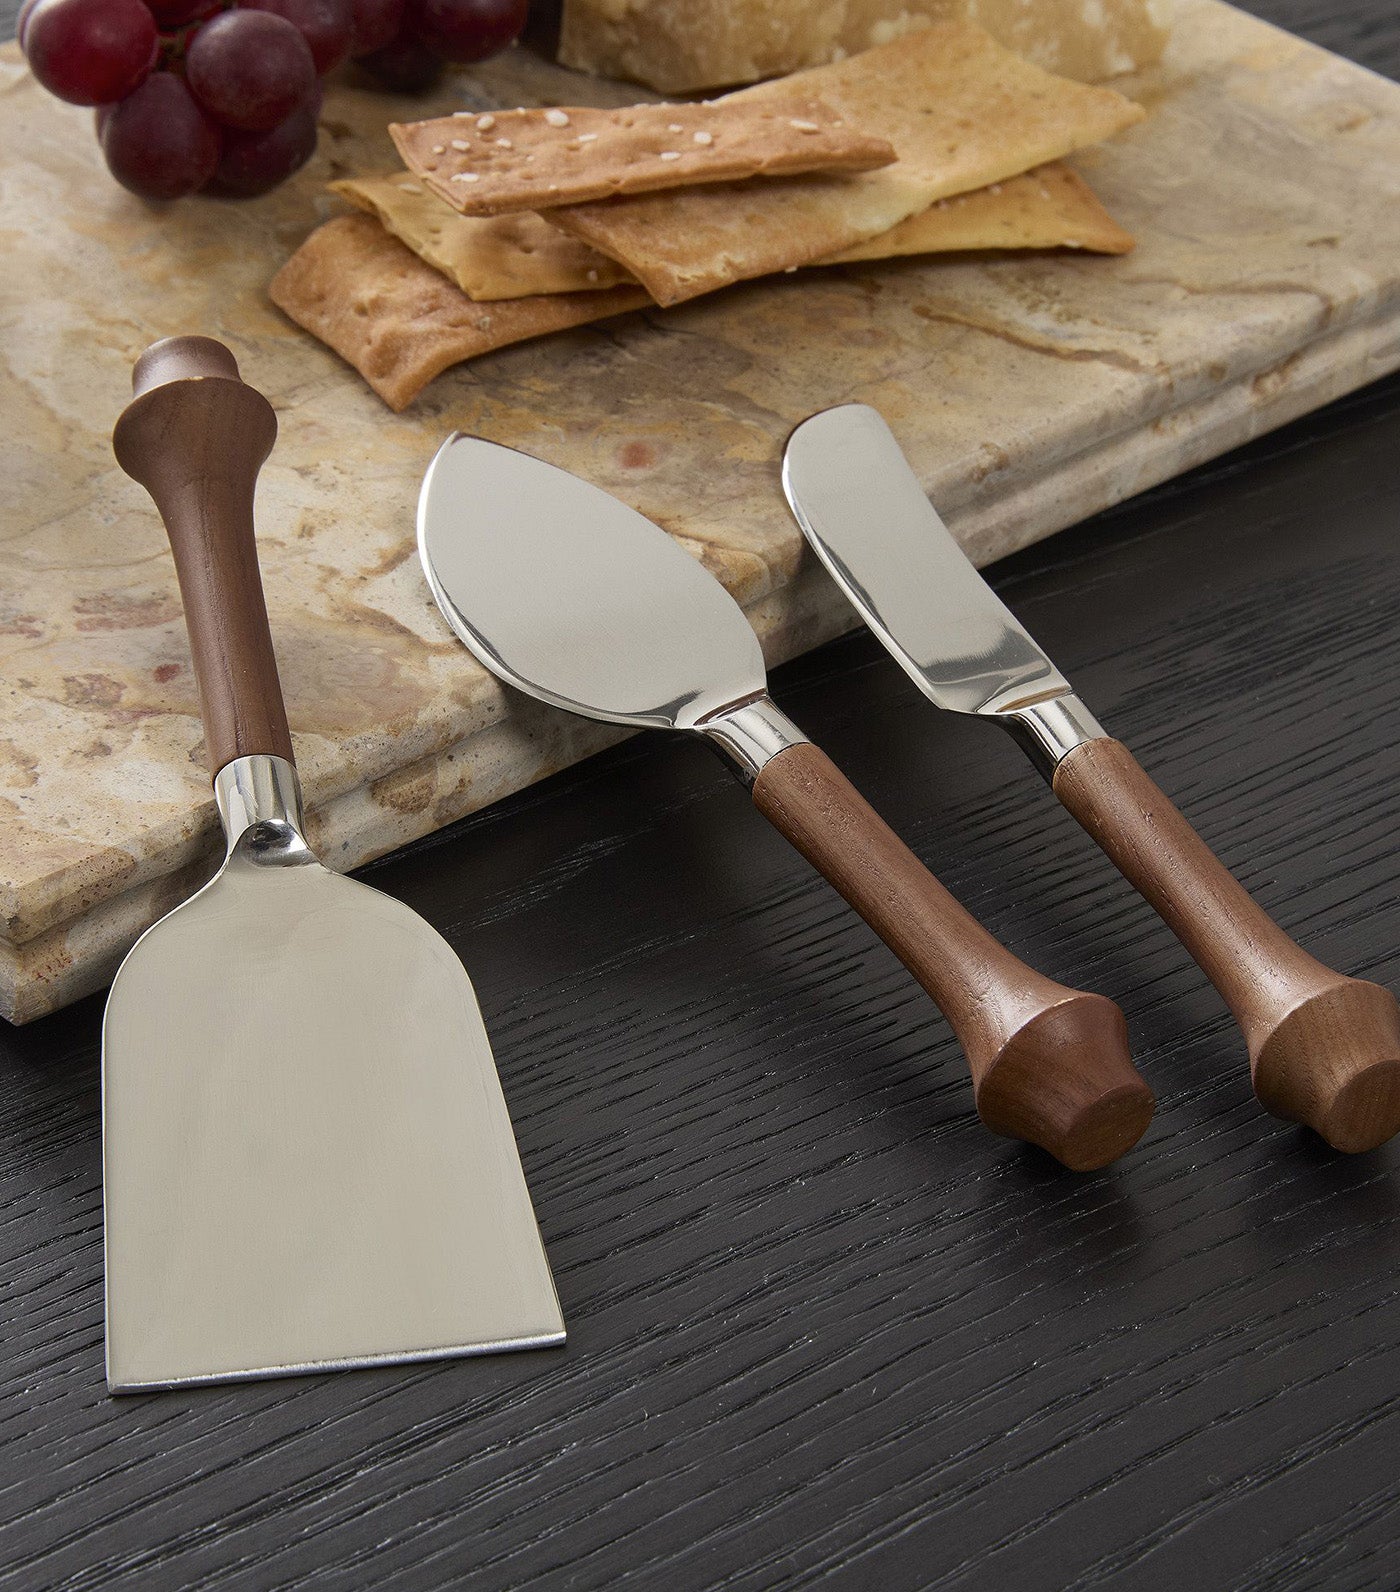 Tira Wood & Metal Cheese Knives (Set of 3)